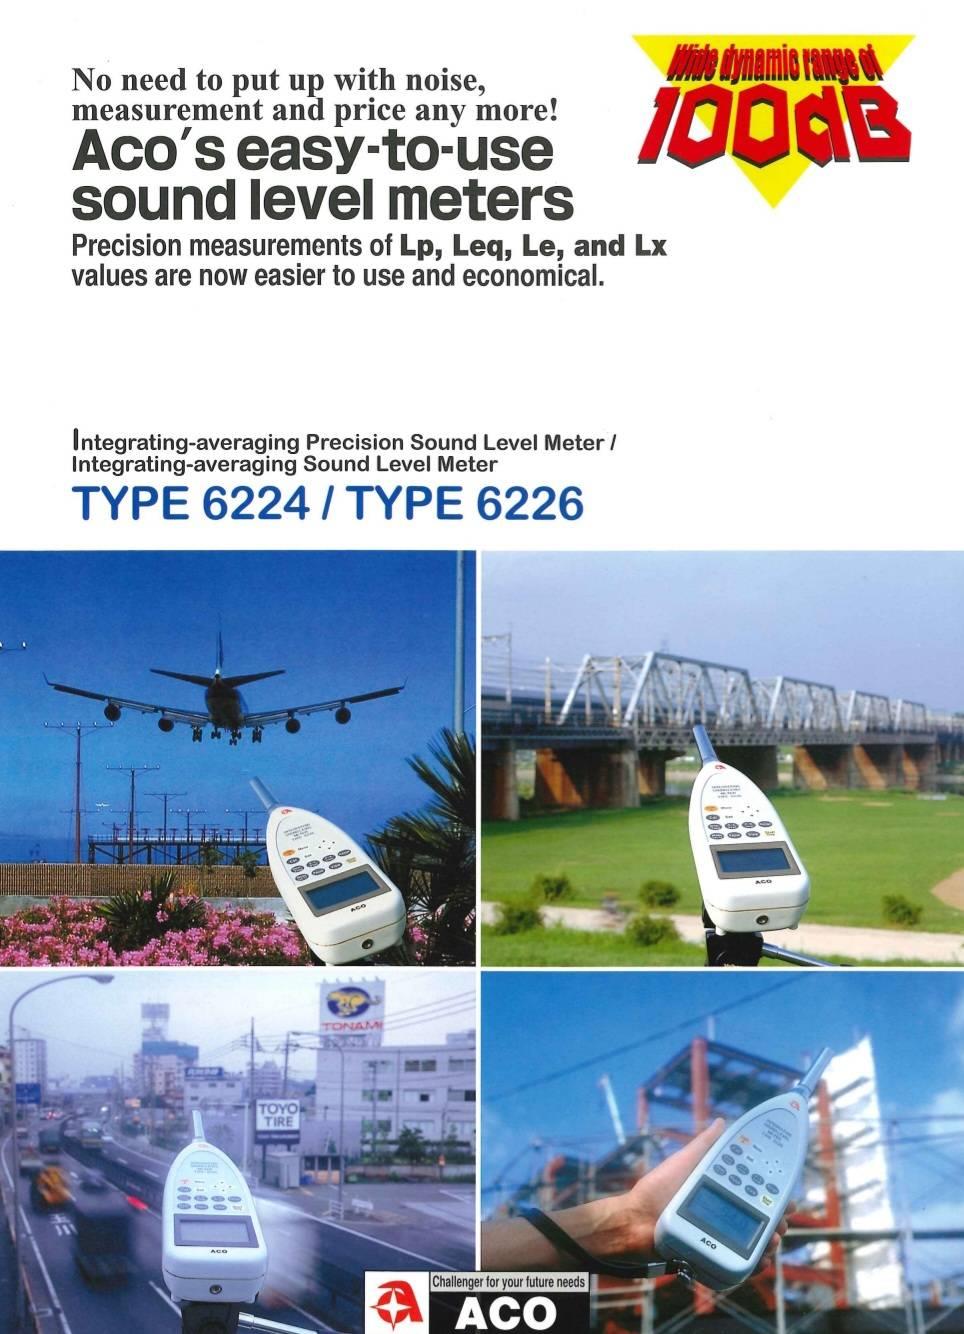 เครื่องวัดความดังเสียง (Sound Level Meter), Brand: ACO (Japan), Model: 6224 / 6226,#ขาย #จำหน่าย #soundlevelmeter #soundmeter #เครื่องวัดความดังเสียง #เครื่องวัดเสียง #aco #aco6224 #aco6226 #6224 #6226 #eec #dealer #distributor #ตัวแทนจำหน่าย #factory #industrial #นิคมอุตสาหกรรม #อุตสาหกรรม #สินค้าอุตสาหกรรม #โรงงาน #สิ่งแวดล้อม #environment #engineering #engineer #safety #จป #construction #รับเหมา #ก่อสร้าง #workicon #workicontech,,Energy and Environment/Environment Instrument/Sound Meter